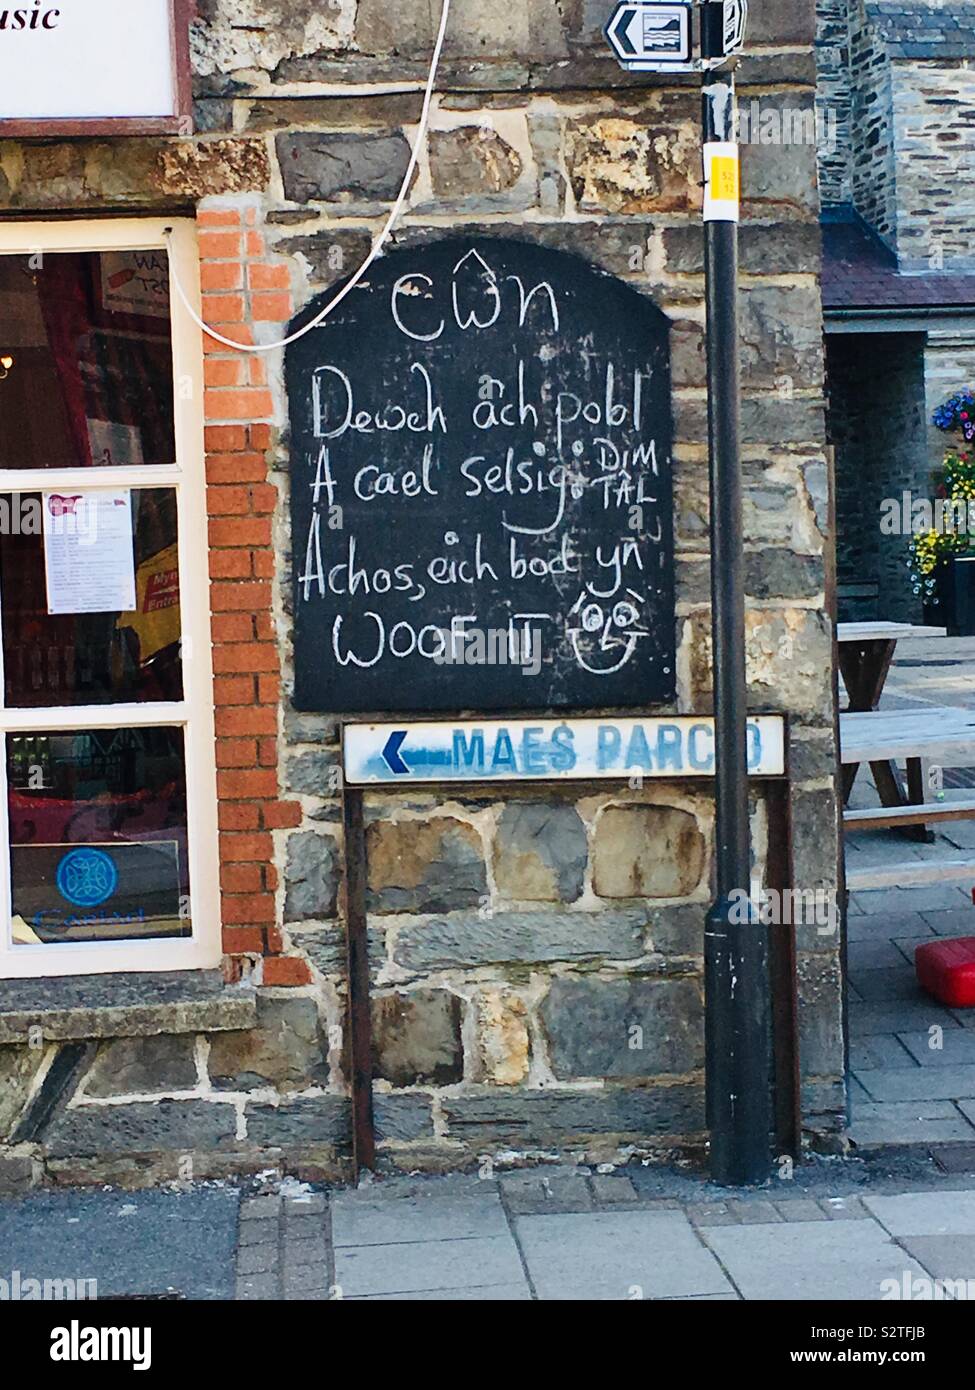 Signe de la langue galloise : 'Dogs, apportez votre homme. Get a free sausage - parce que vous êtes woof !' sur un café à Cardigan, Wales. Banque D'Images